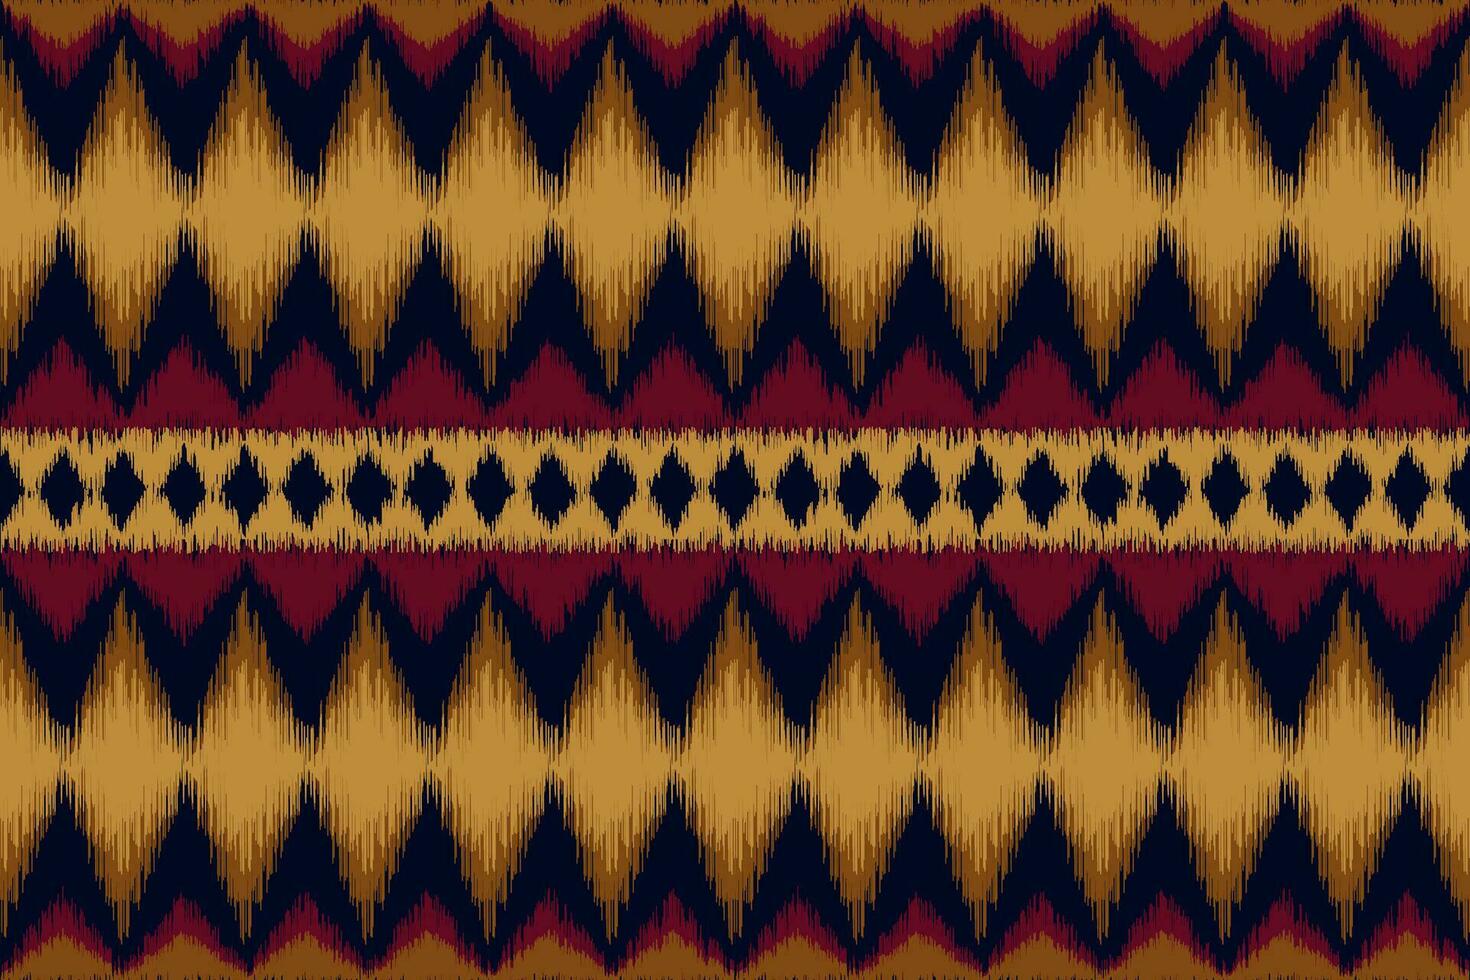 etnisch abstract ikat kunst. naadloos patroon in stam, volk borduurwerk. ontwerp voor tapijt, behang, kleding, inpakken, kleding stof, omslag, textiel vector